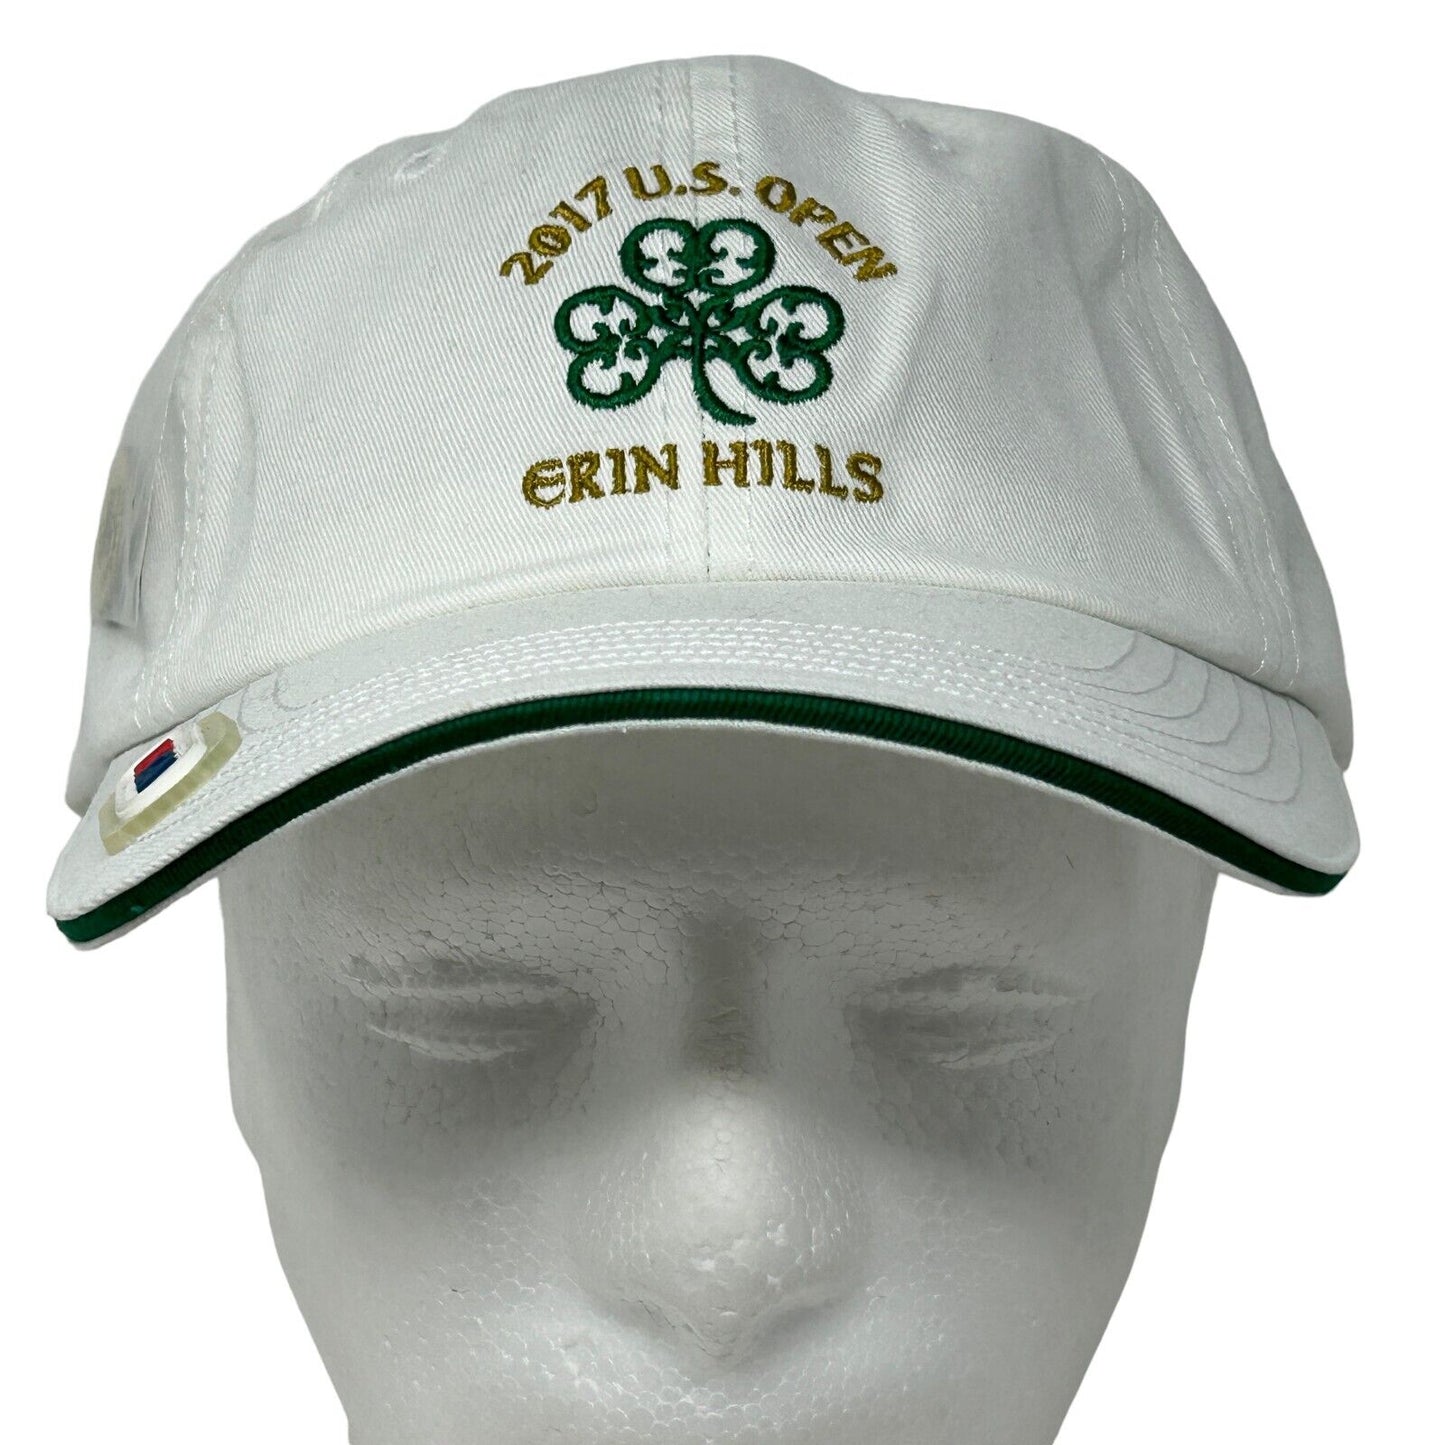 2017 US Open Erin Hills Golf Course Dad Hat Golf Ball Marker White Baseball Cap